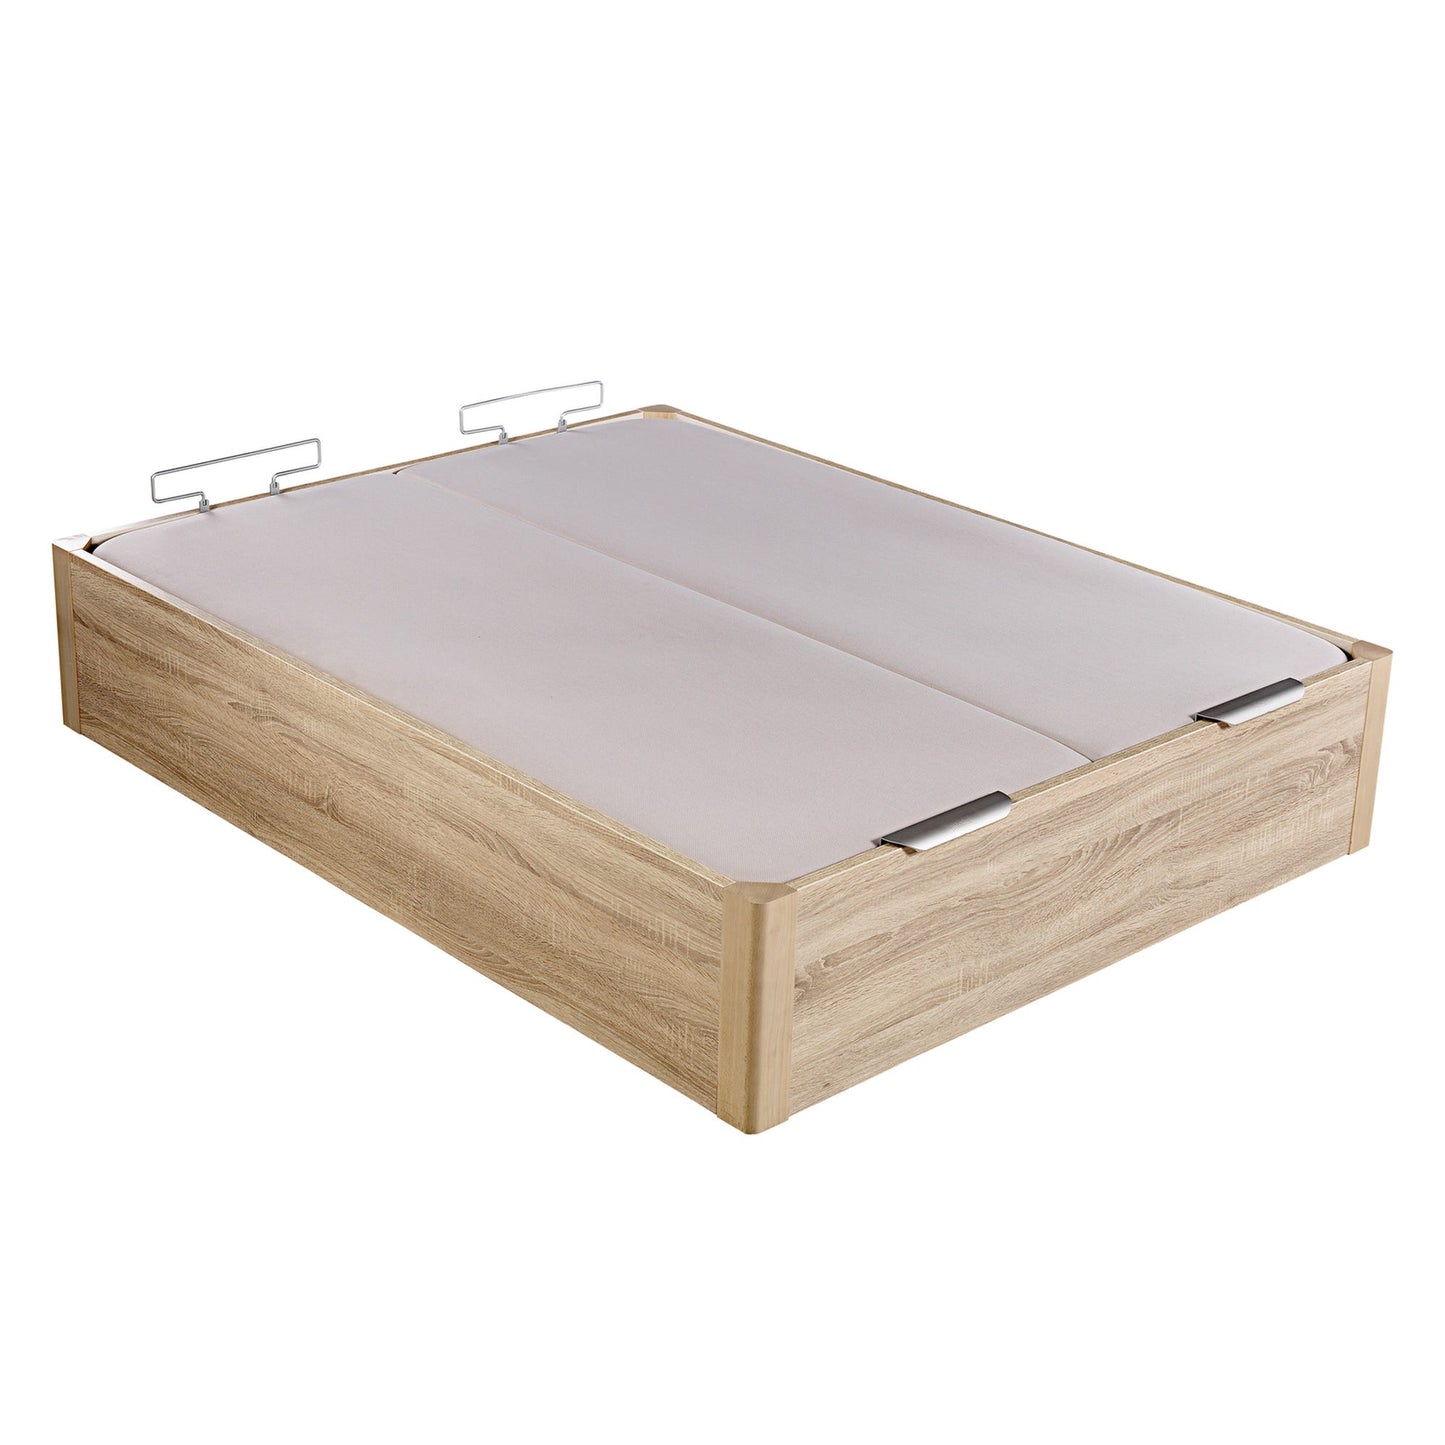 Canapé abatible de madera de alta capacidad tapa doble de color natural - DESIGN - 200x182